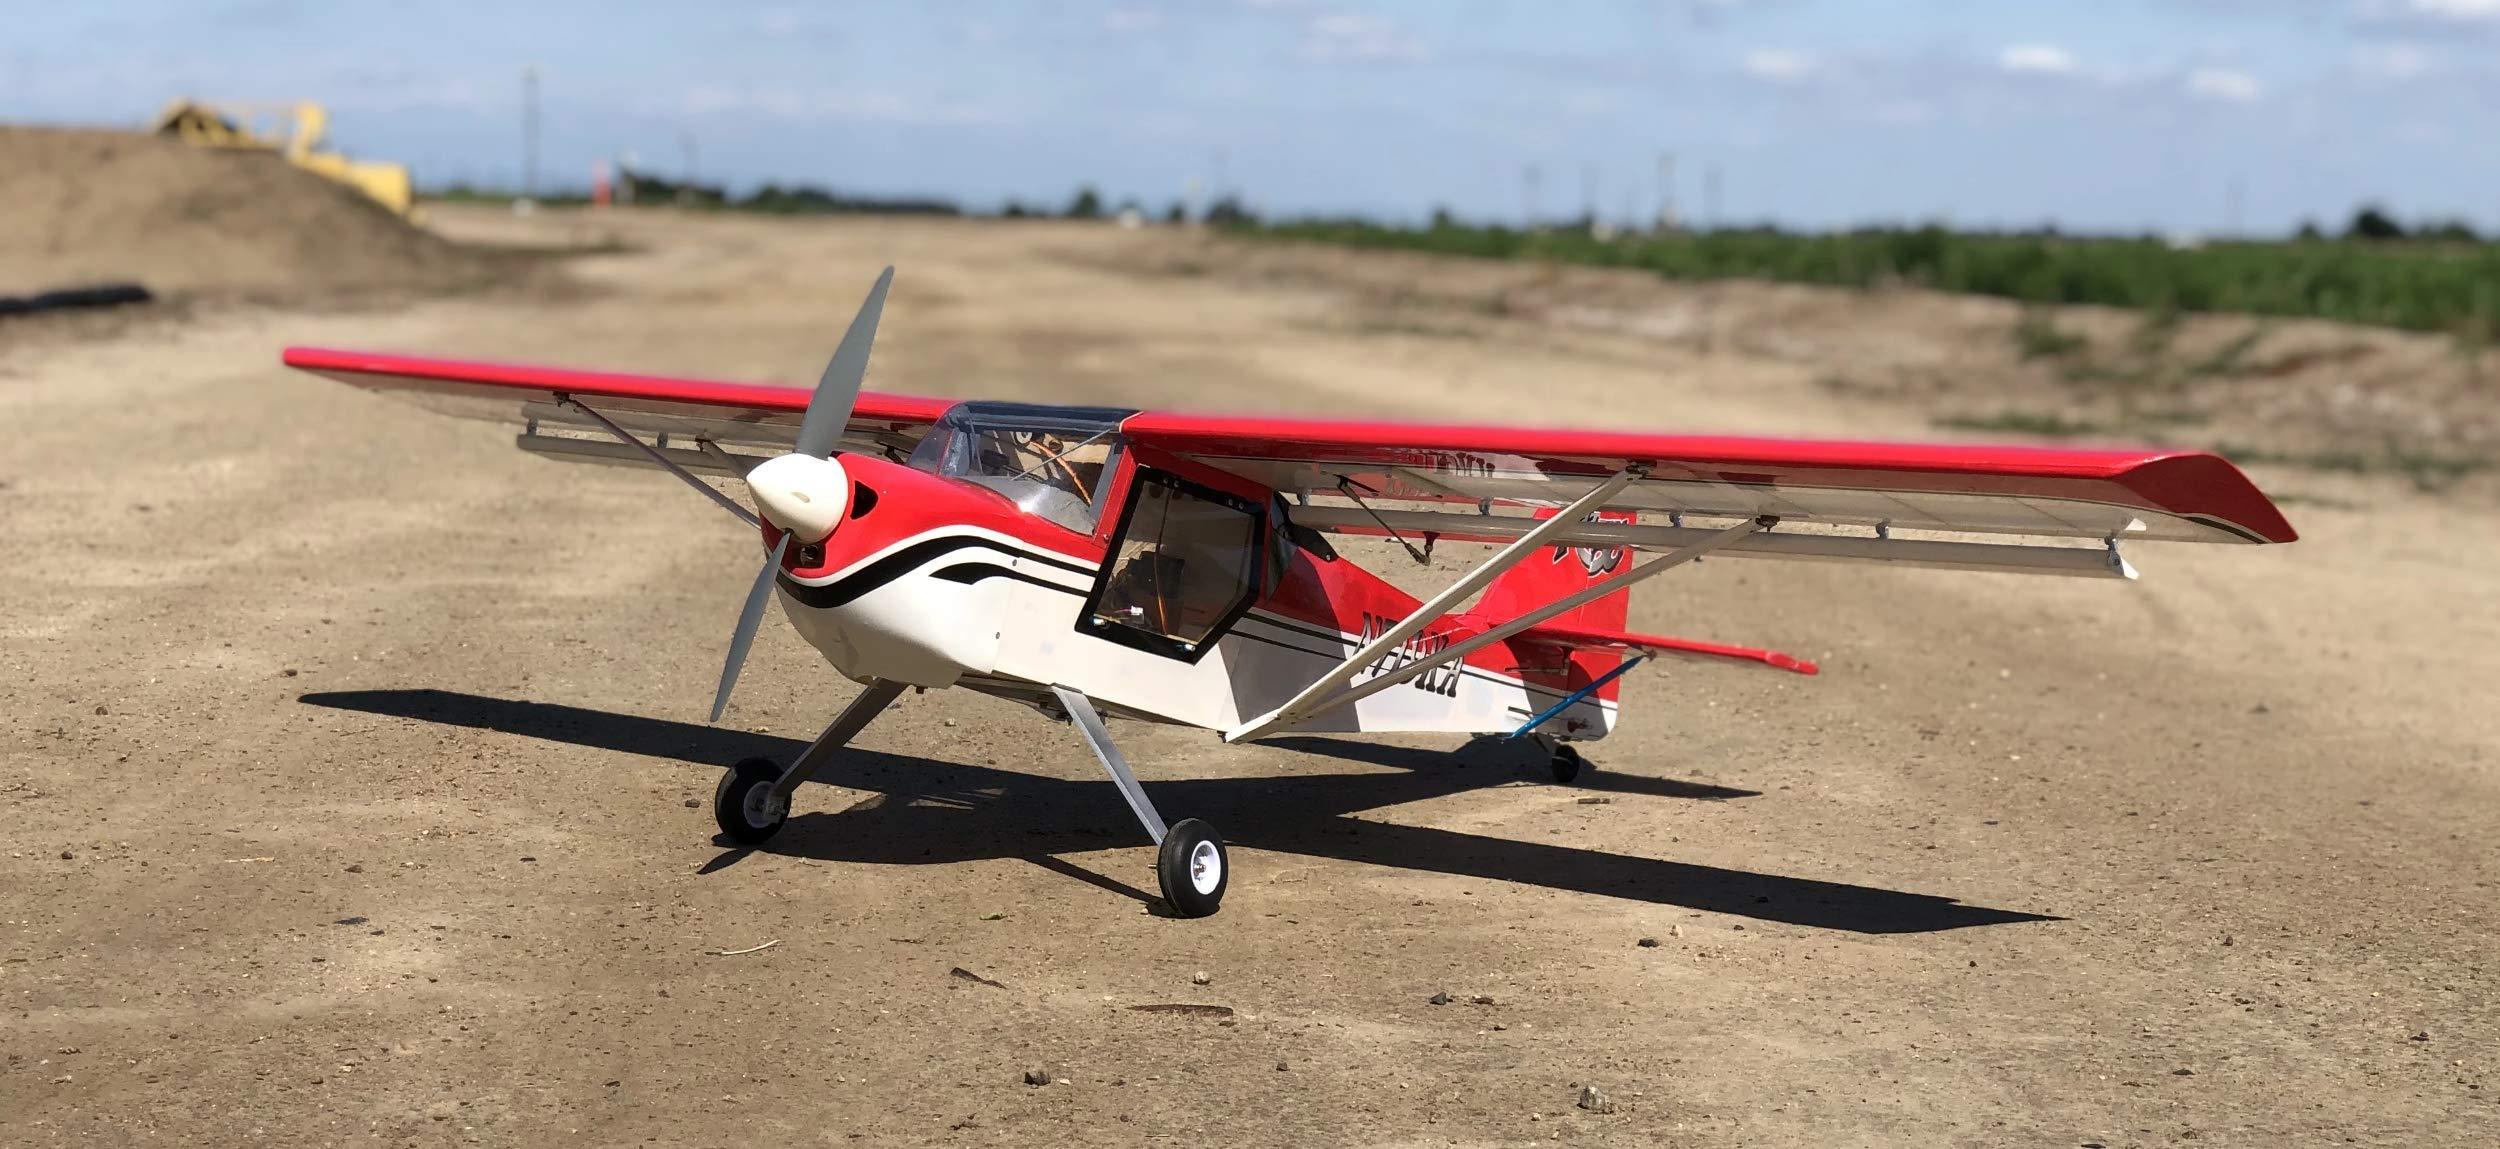 Kitfox Rc Plane:  Affordable Hobby Option